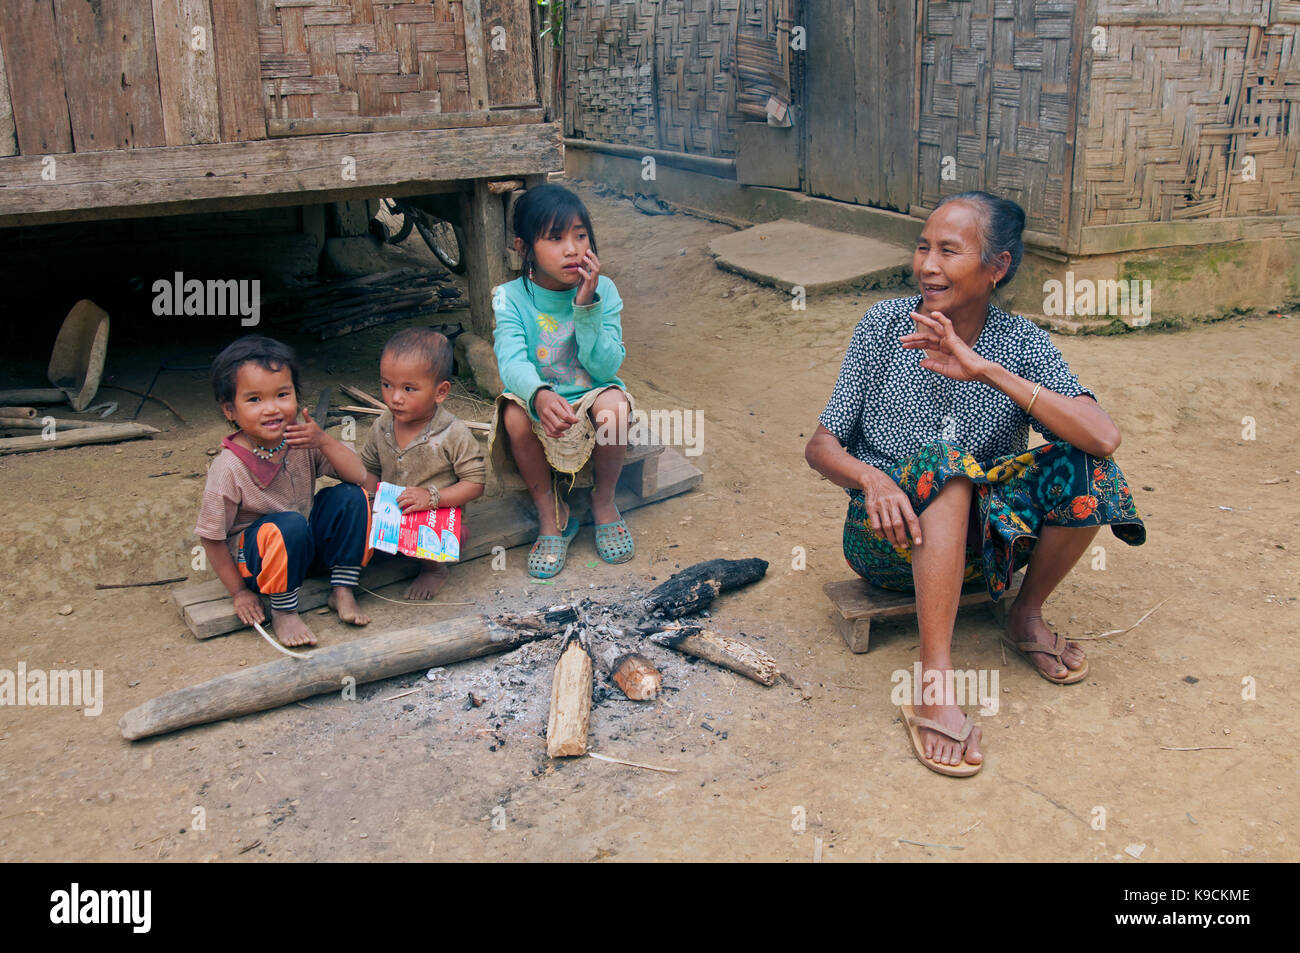 Une vieille femme laotienne s'assoit à côté de trois petits enfants laotiens dans un village rural dans le Nord du Laos Banque D'Images